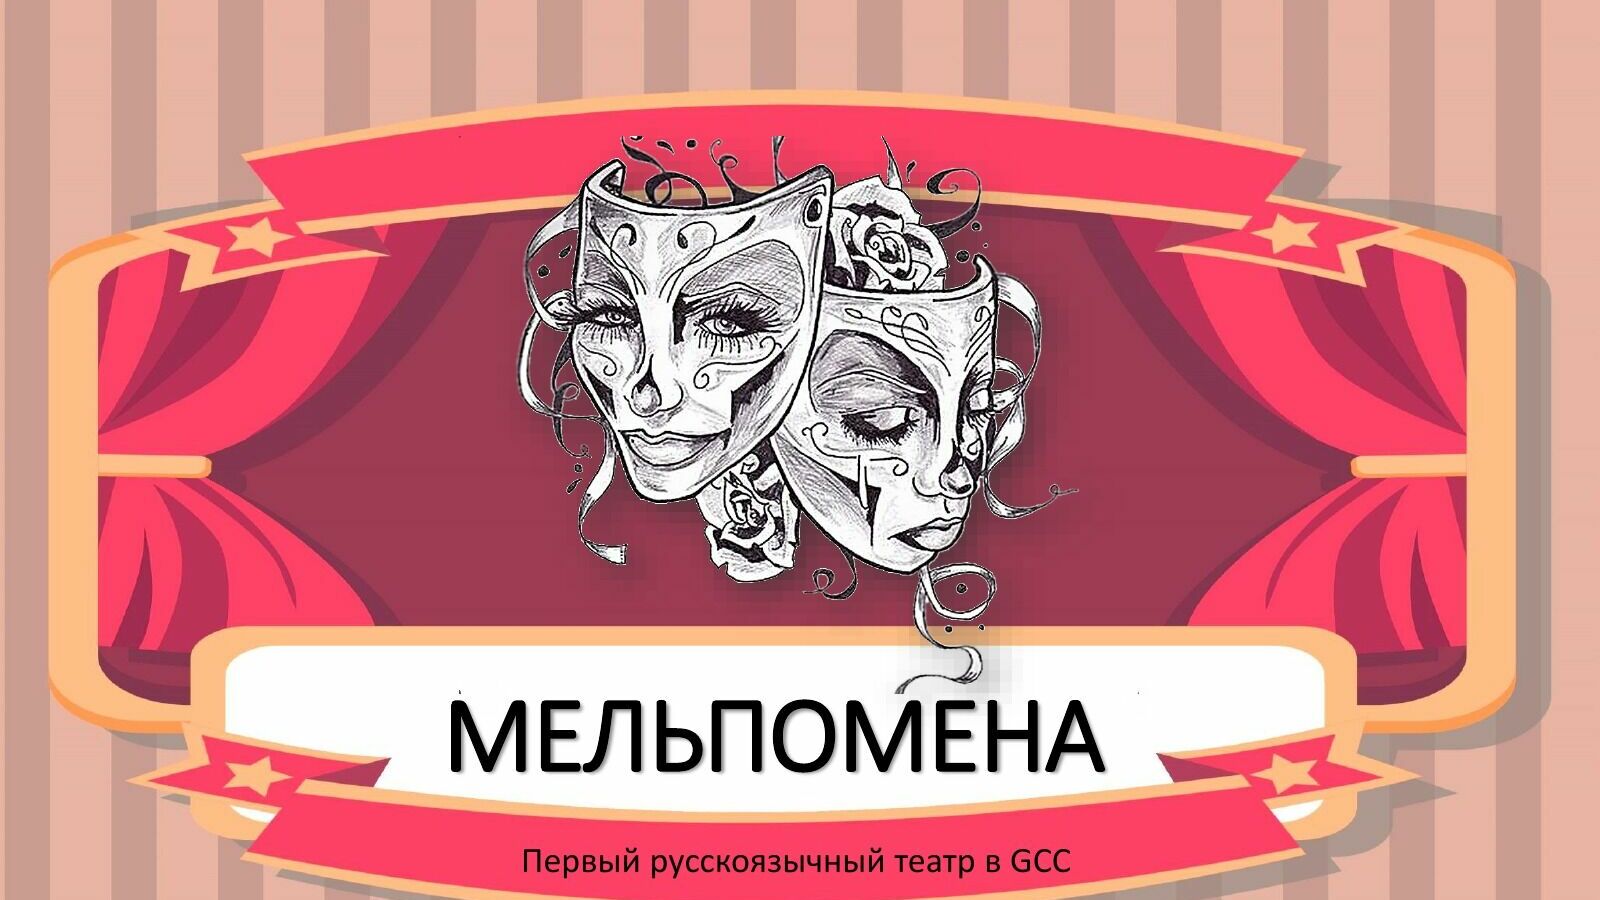 Мельпомена для эмигрантов: в ОАЭ уже седьмой год работает русскоязычный театр